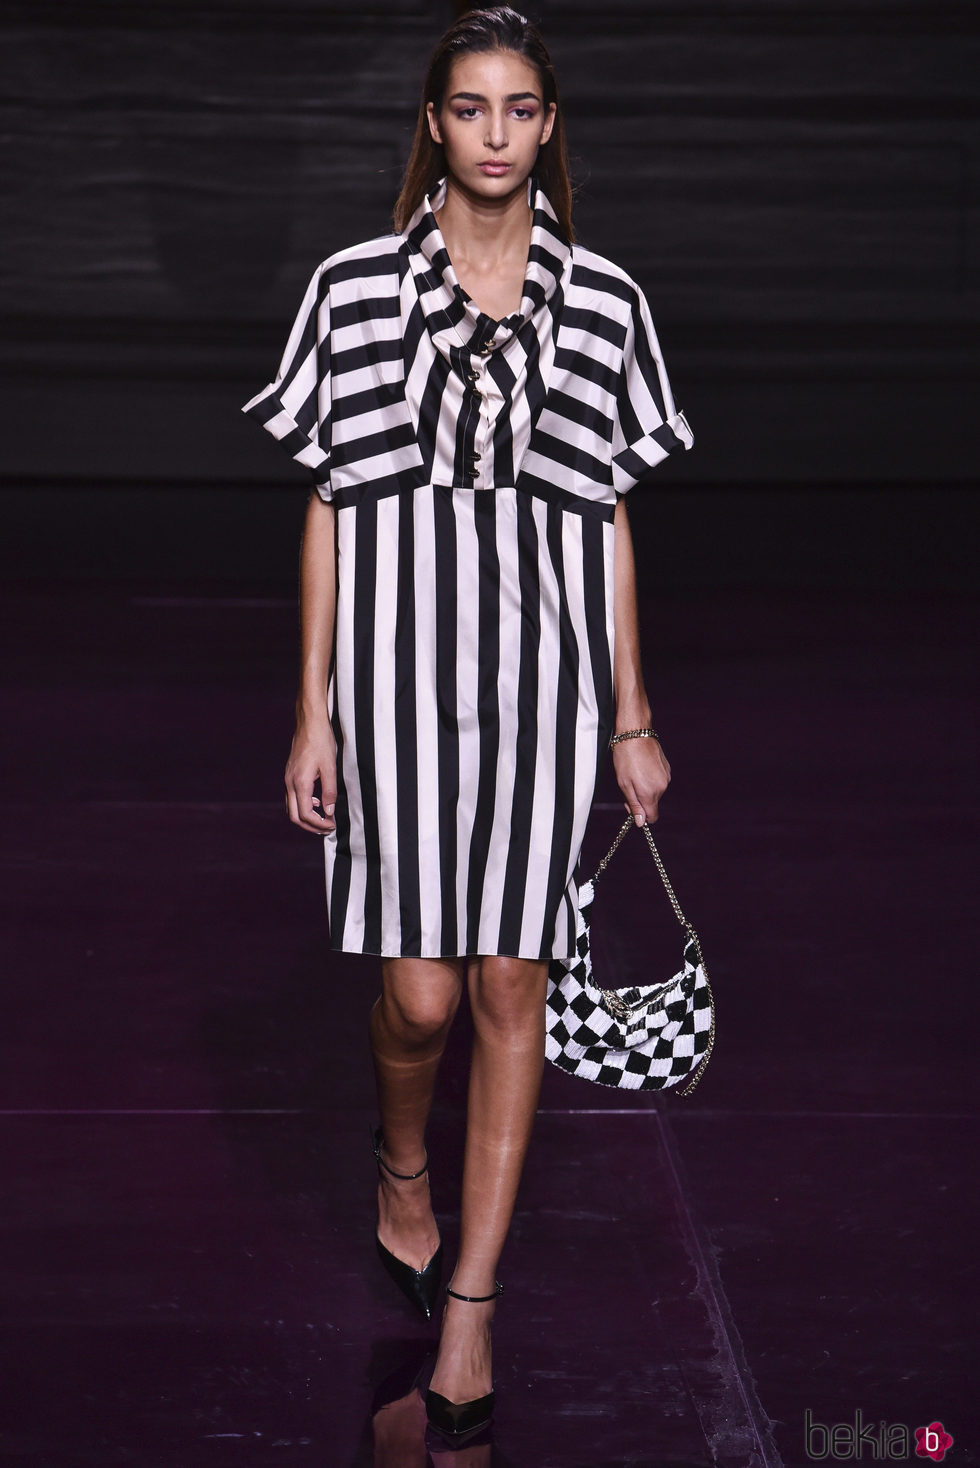 Vestido de rayas de la colección primavera/verano 2017 de Nina Ricci en Paris Fashion Week